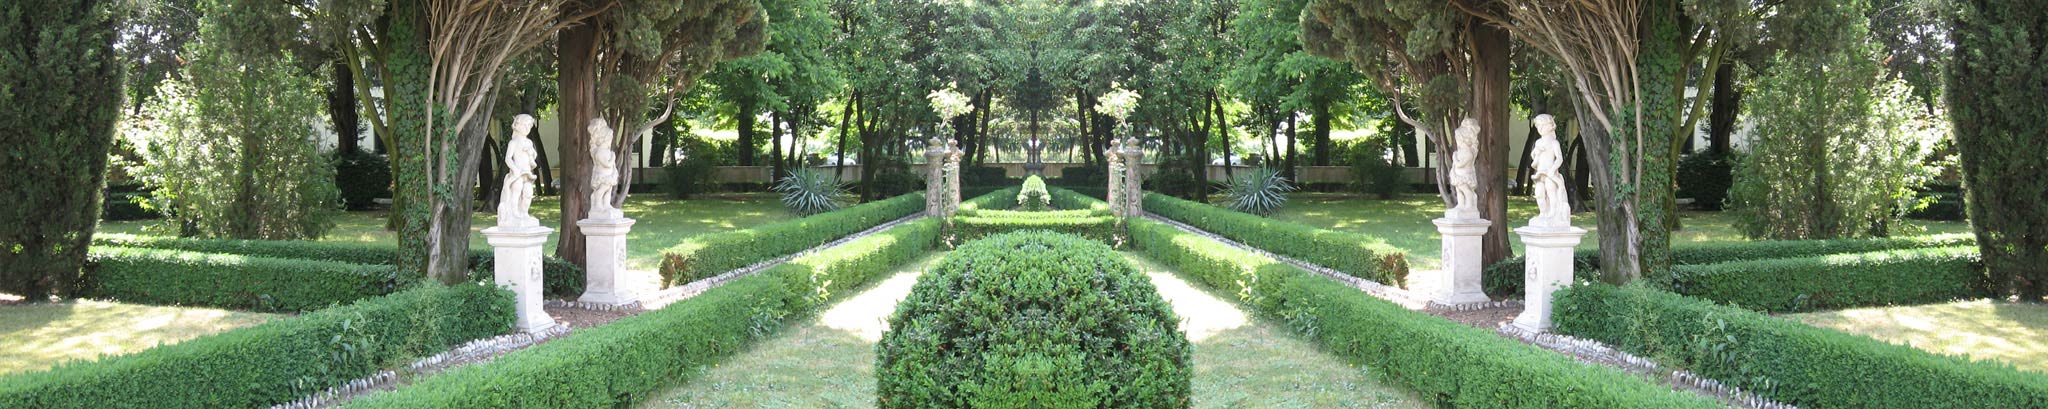 Villa La Quiete - Parco